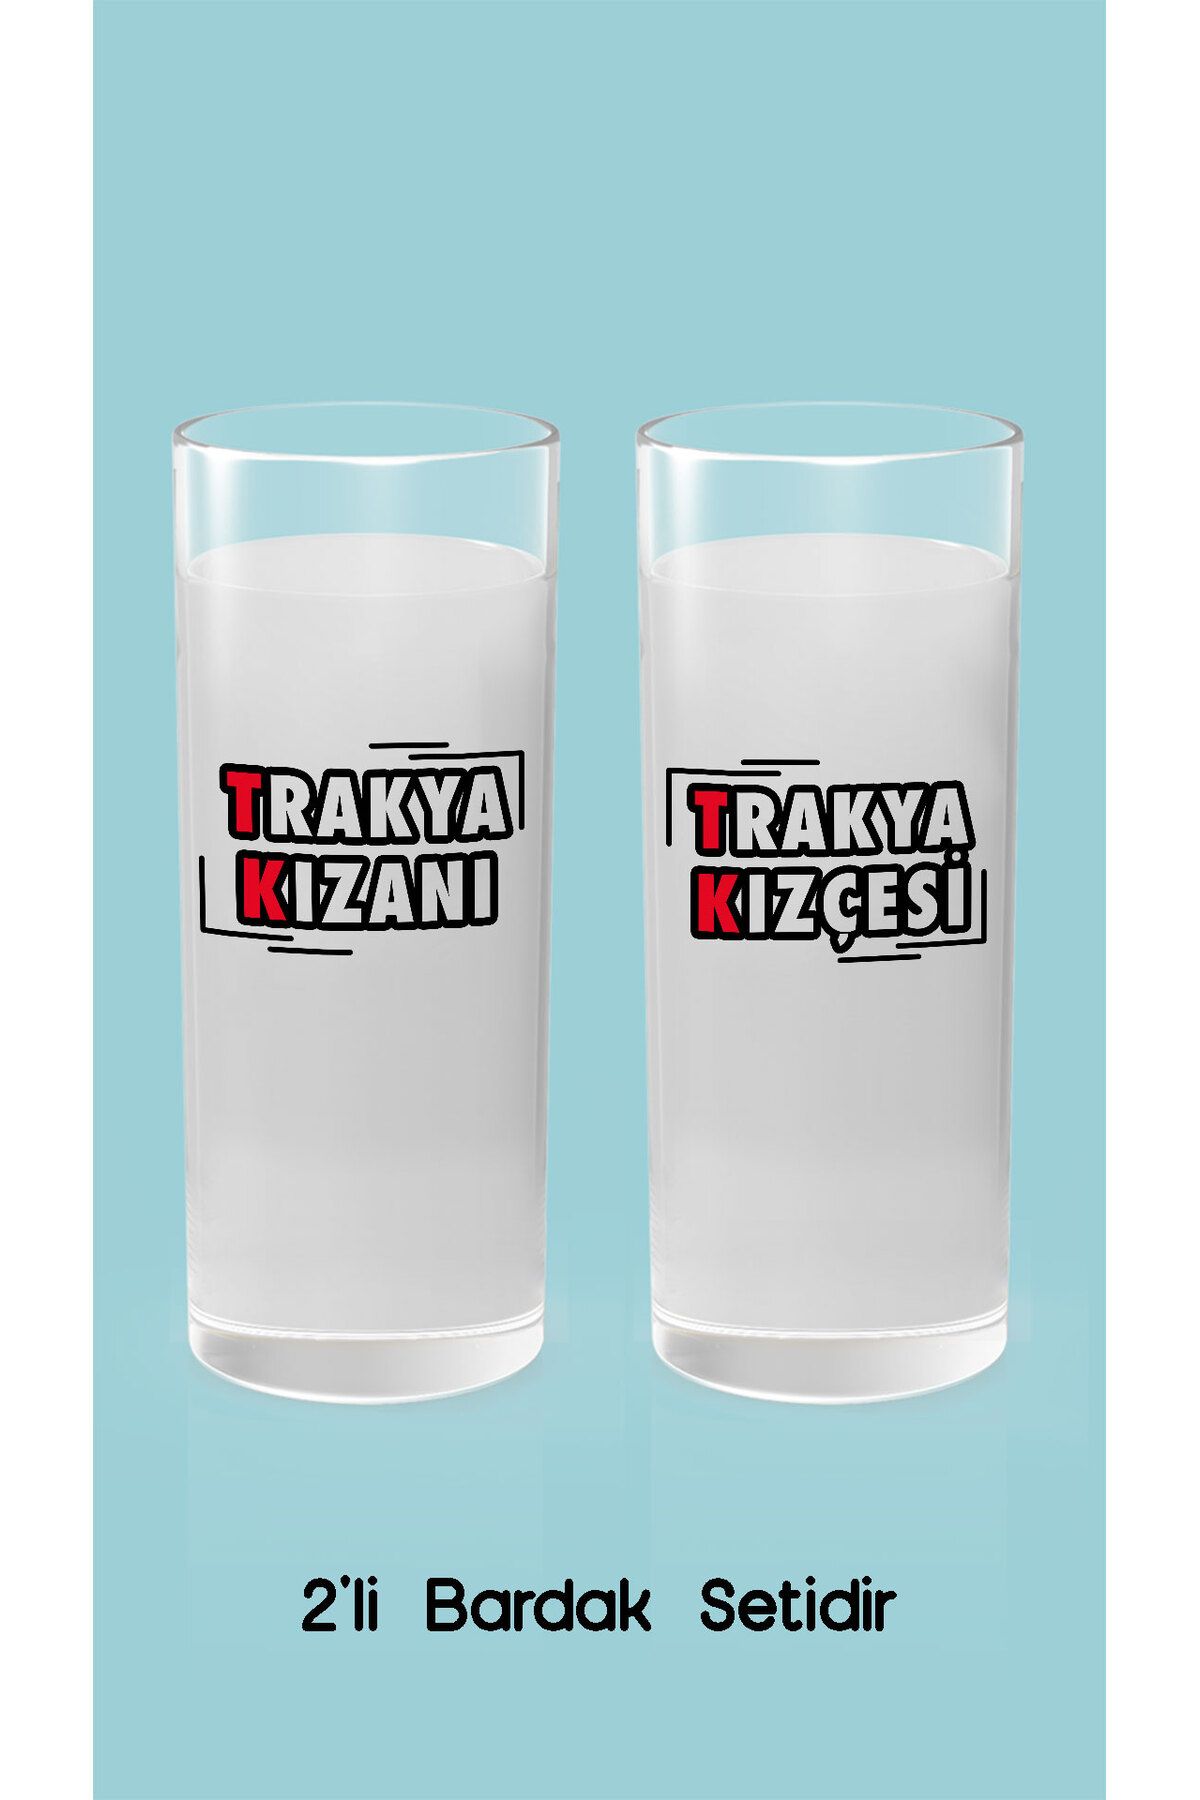 Trakya Bazaar Trakya Kızanı - Trakya Kızçesi (Rakı Bardağı)